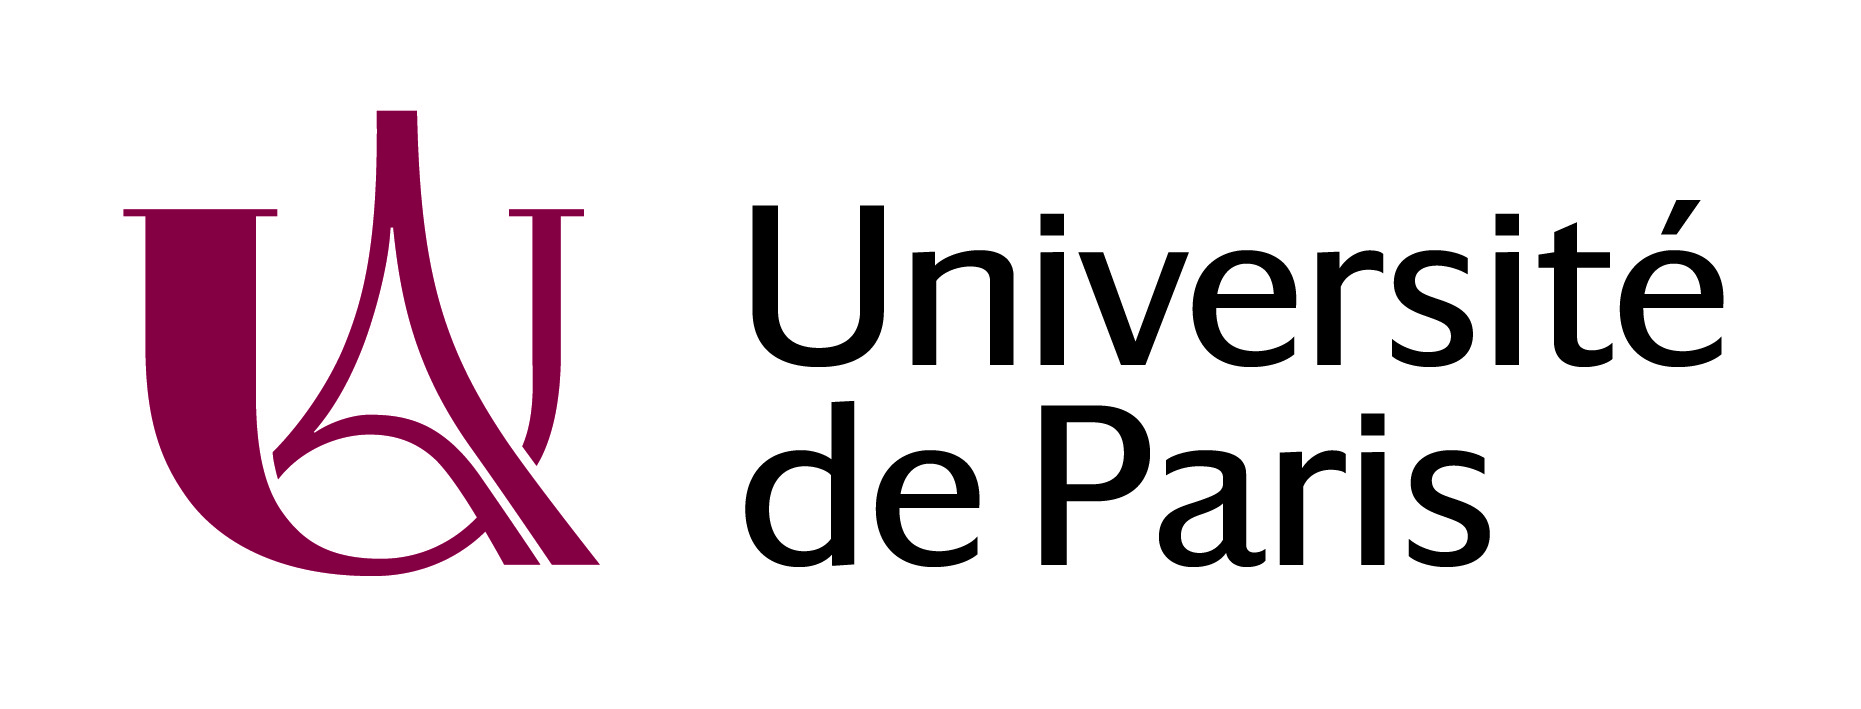 Universite De Paris Former Name Universite Paris Diderot パリ大学 旧称 パリ ディドロ大学 パリ第7 慶應義塾大学国際センター